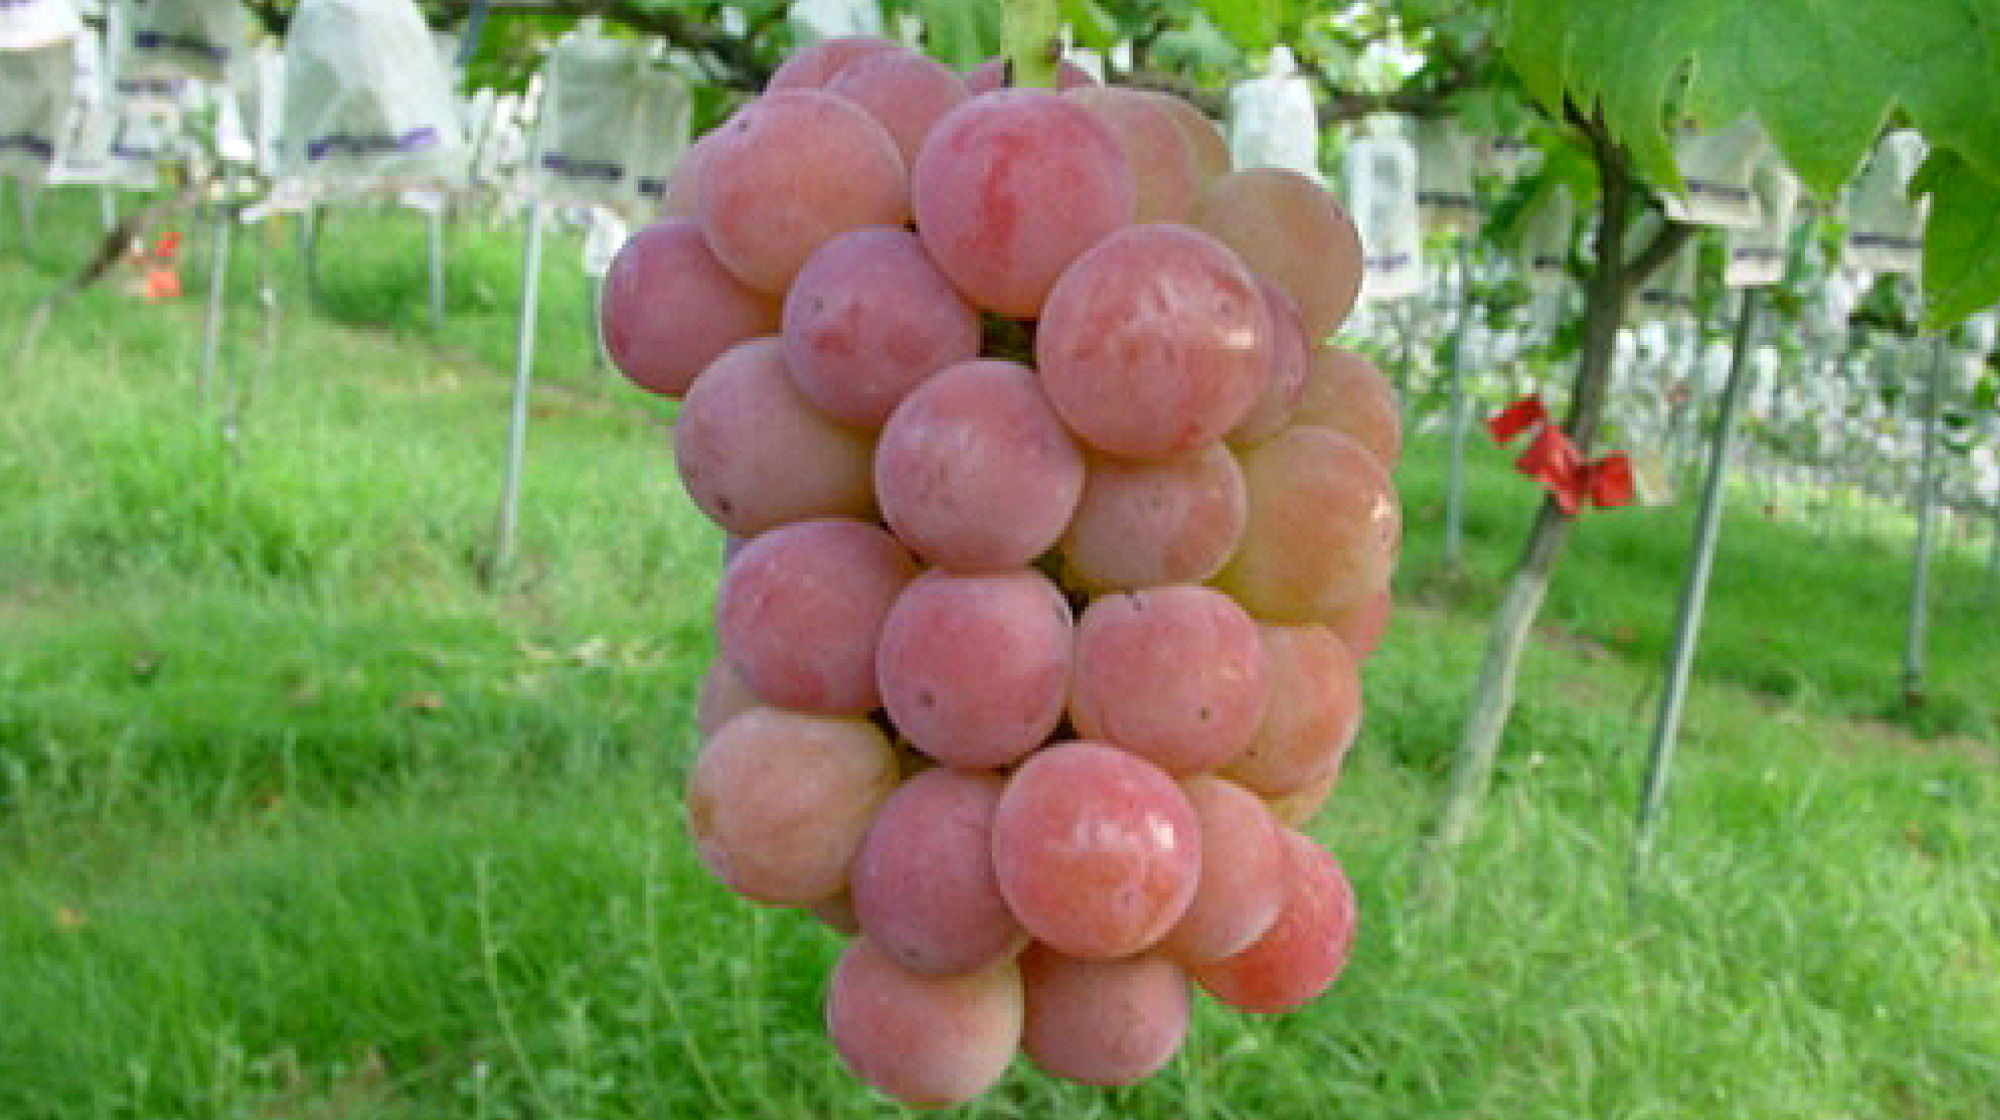 Grape-picking